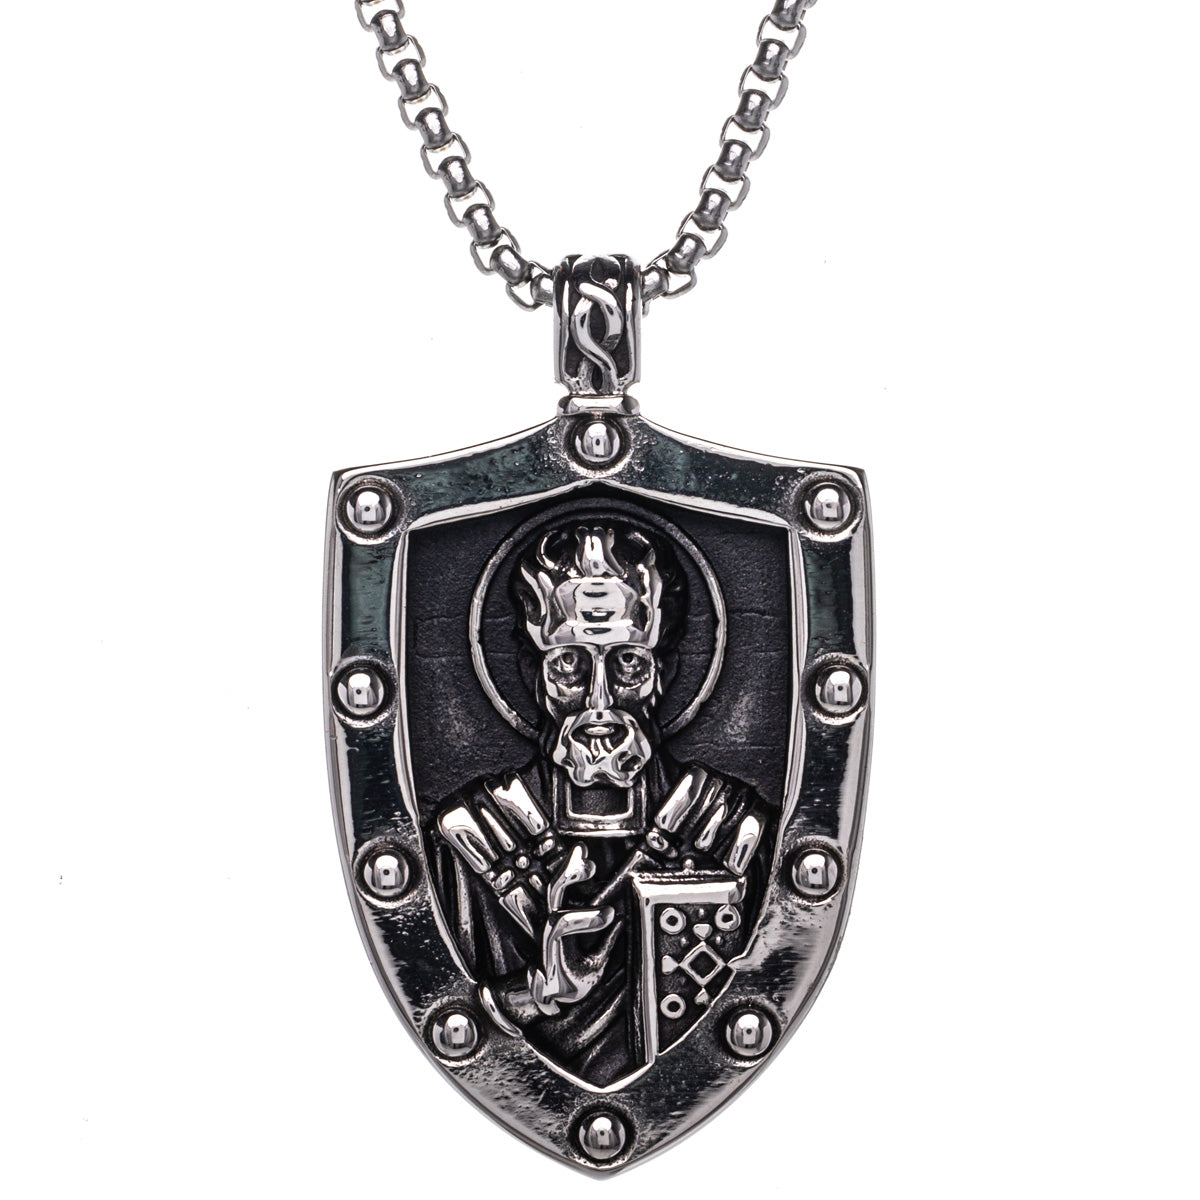 St Nicholas shield pendant necklace (Steel 316L)